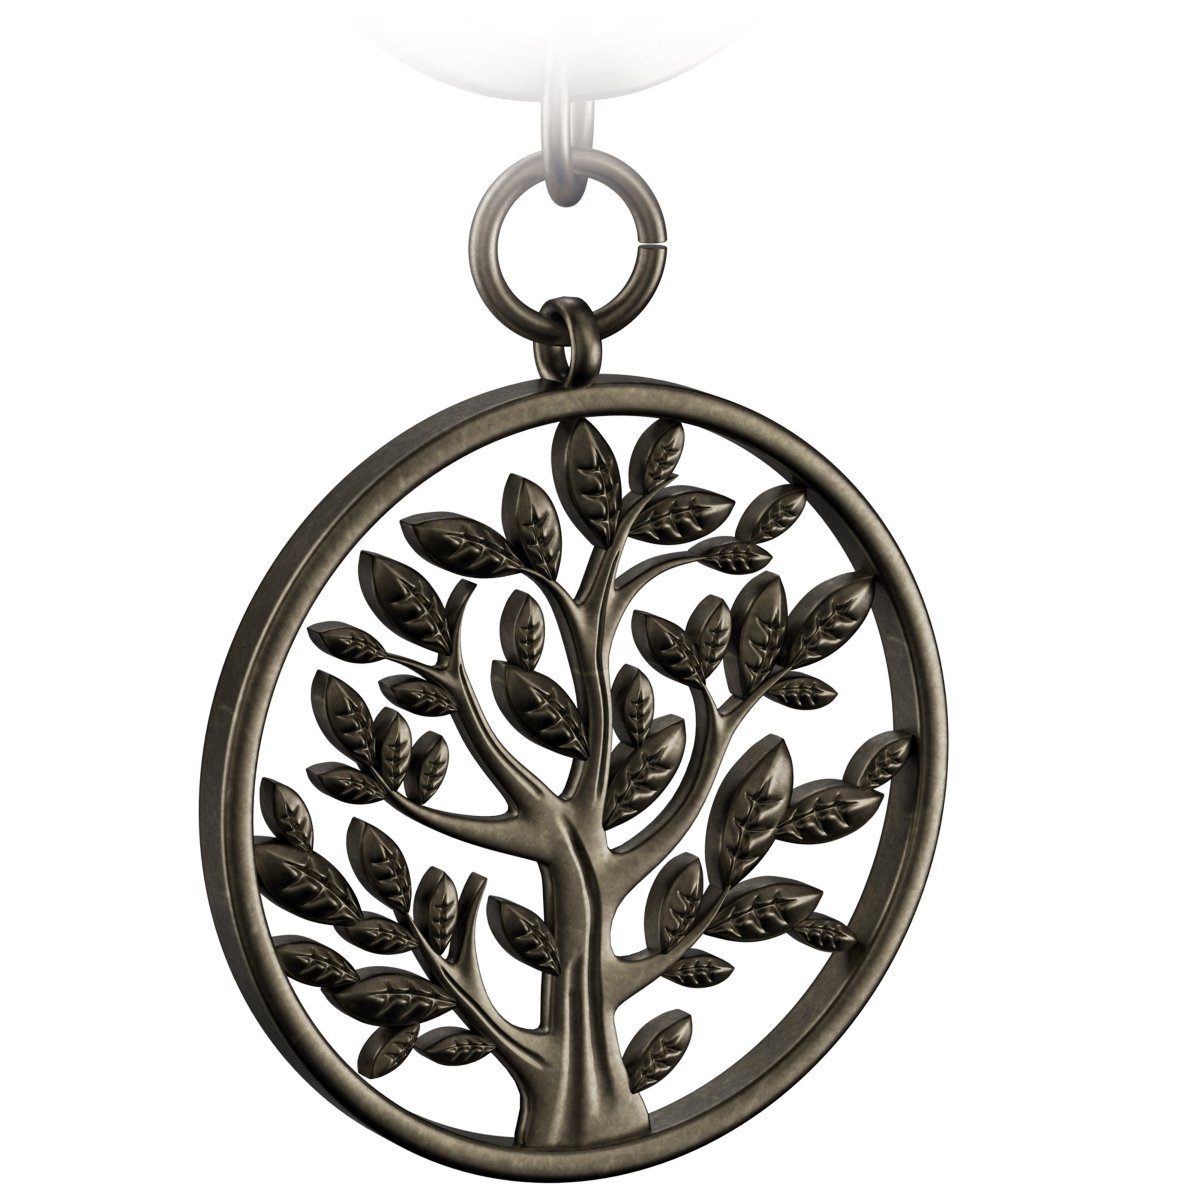 "Spring" Lebensbaum Schlüsselanhänger - Baum des Lebens Anhänger als Glücksbringer für den Schlüsselbund - FABACH#farbe_antique bronze